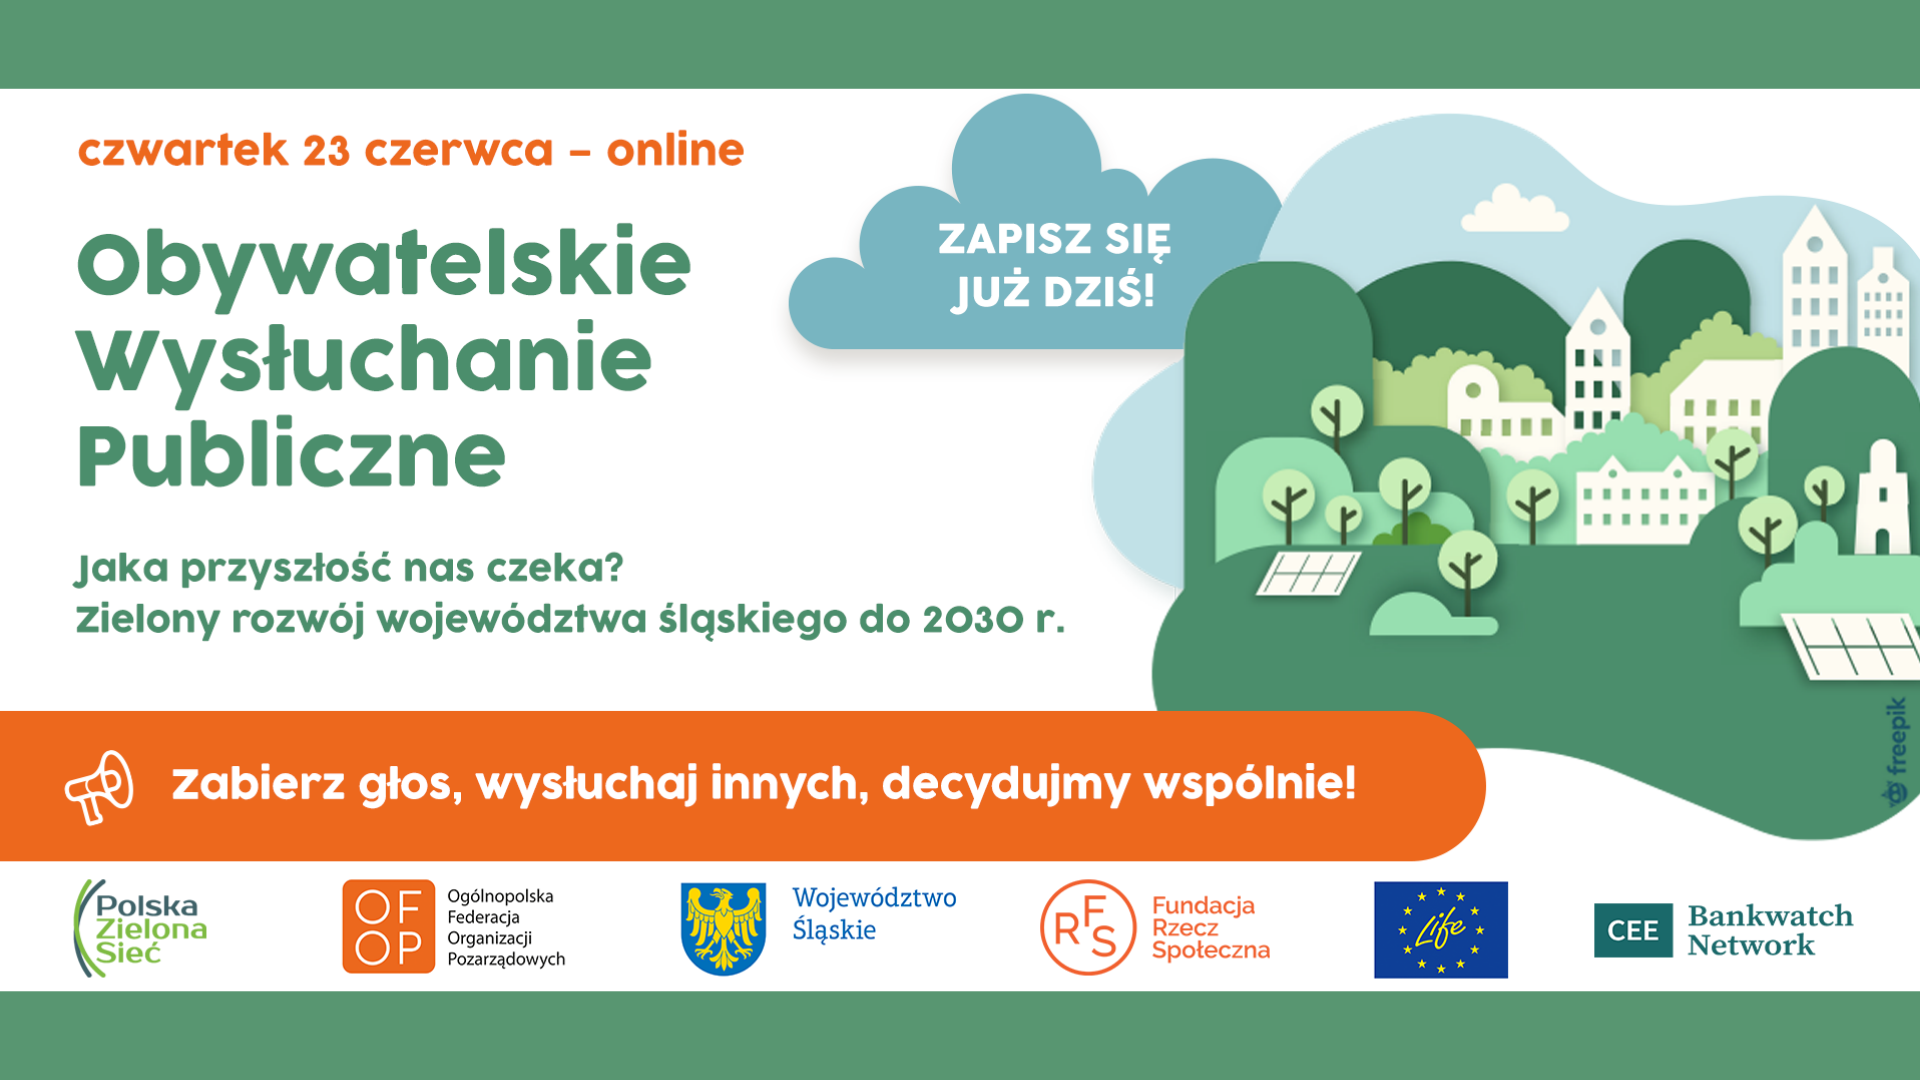 Jaka przyszłość nas czeka? – zielony rozwój województwa śląskiego do 2030 r.